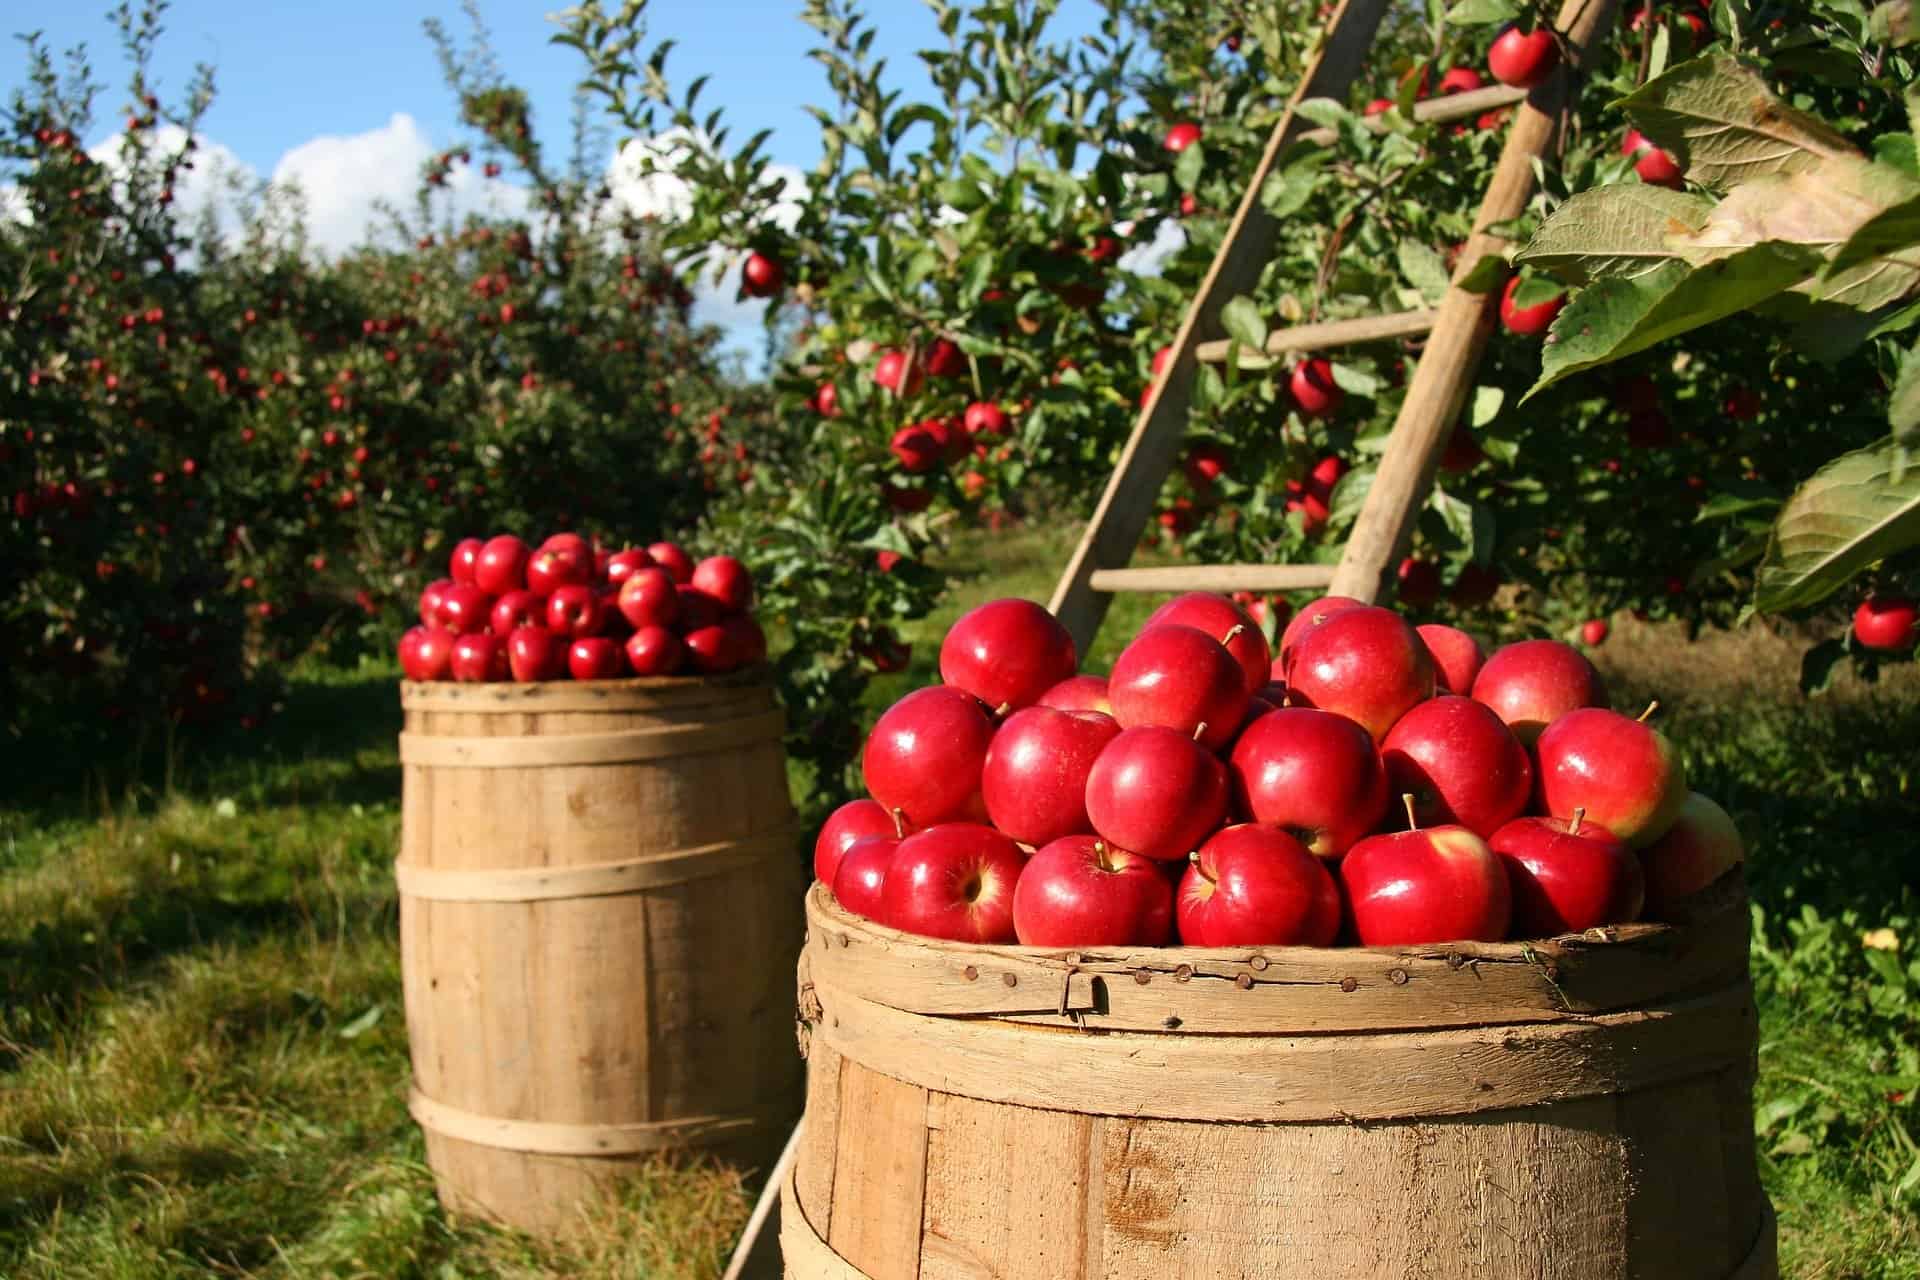 Apple Festival/Harvest Happenings